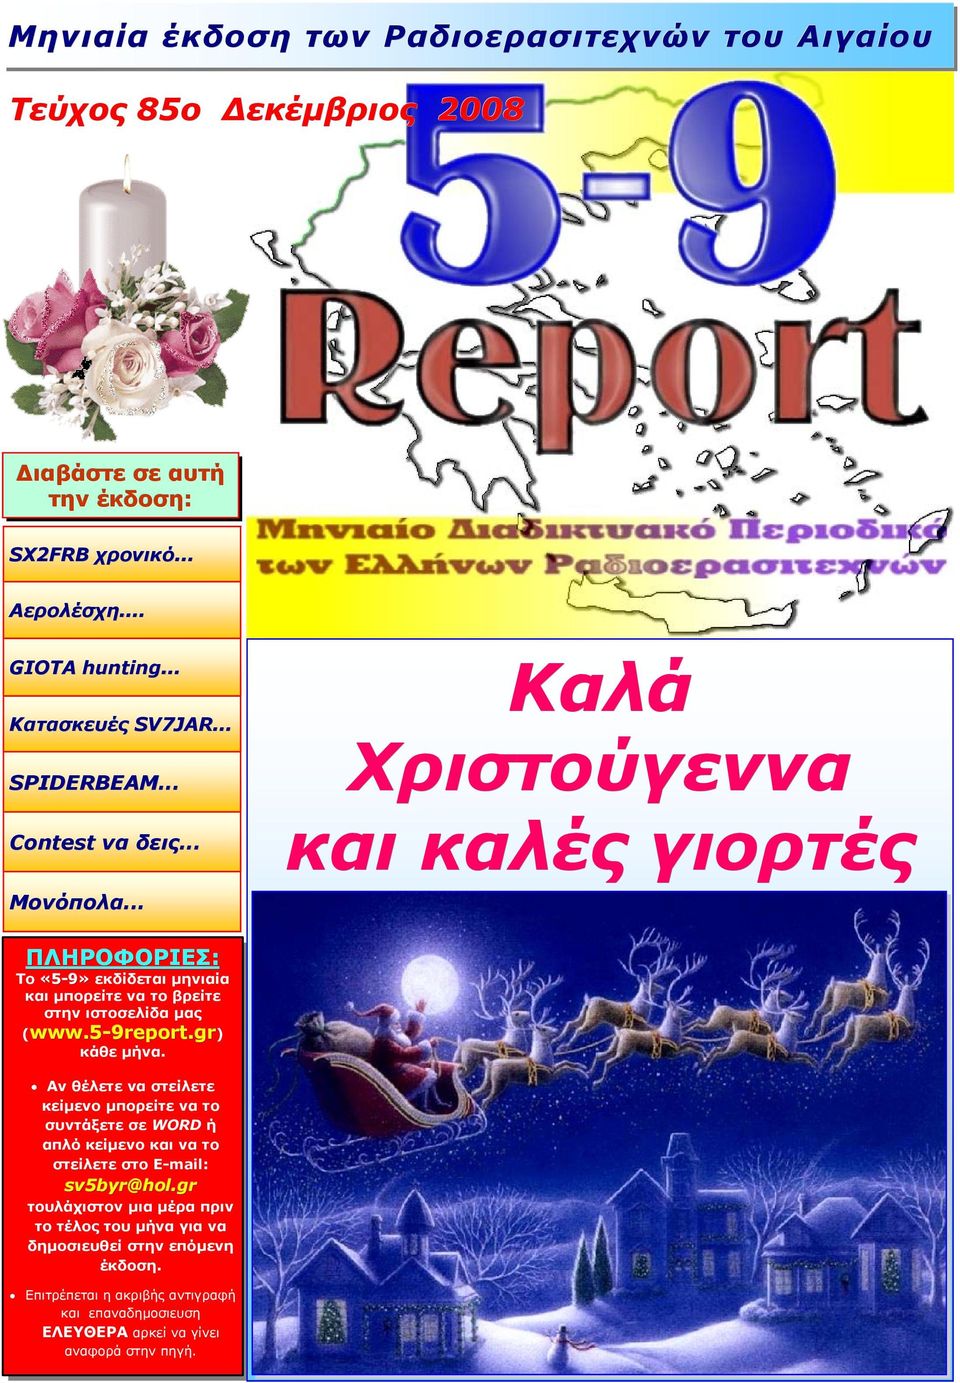 .. Καλά Χριστούγεννα και καλές γιορτές ΠΛΗΡΟΦΟΡΙΕΣ: Το «5-9» εκδίδεται µηνιαία και µπορείτε να το βρείτε στην ιστοσελίδα µας (www.5-9report.gr 9report.gr) κάθε µήνα.